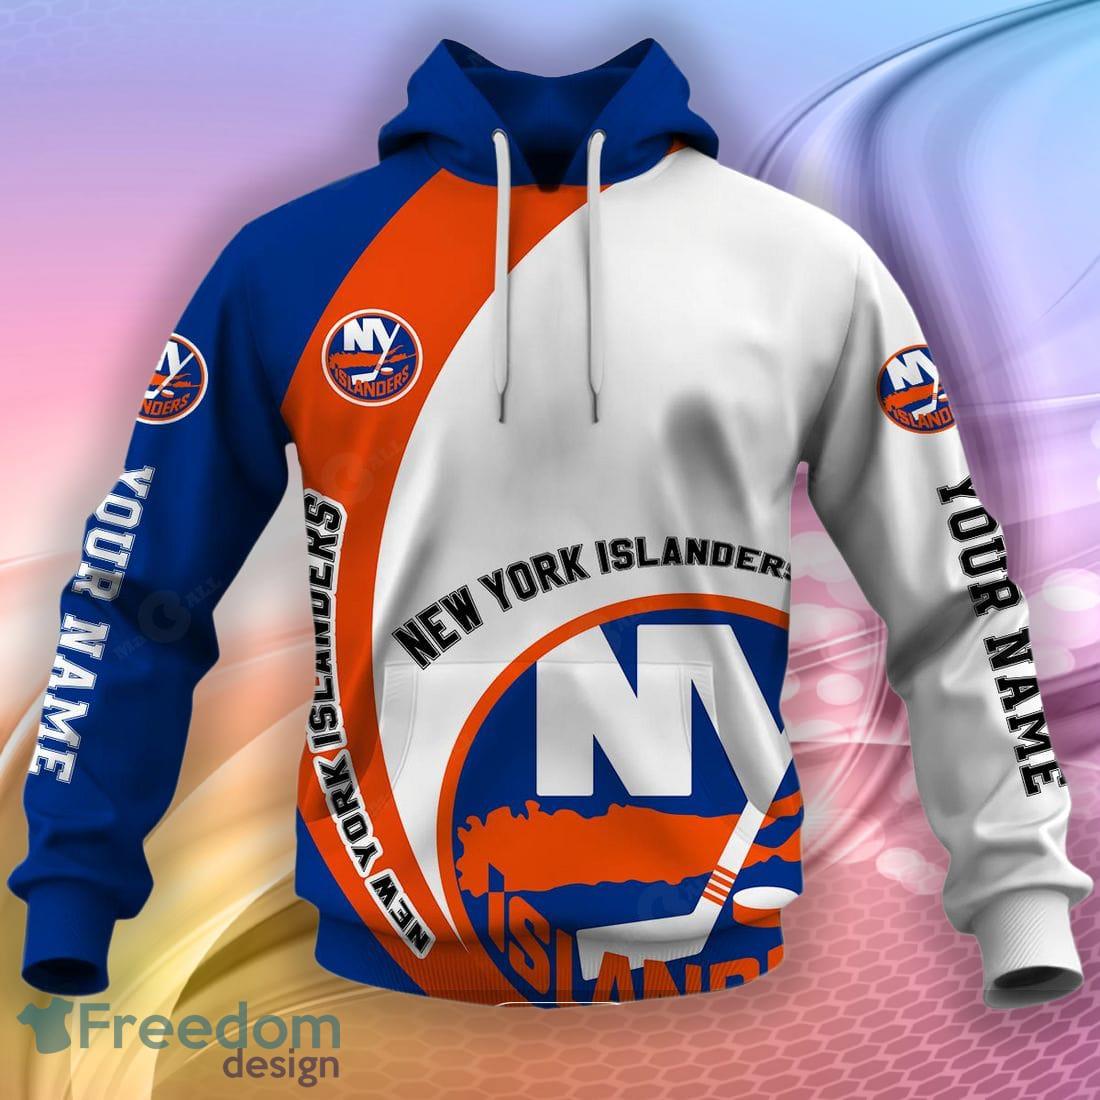 New York Islanders NHL custom name and number ugly christmas